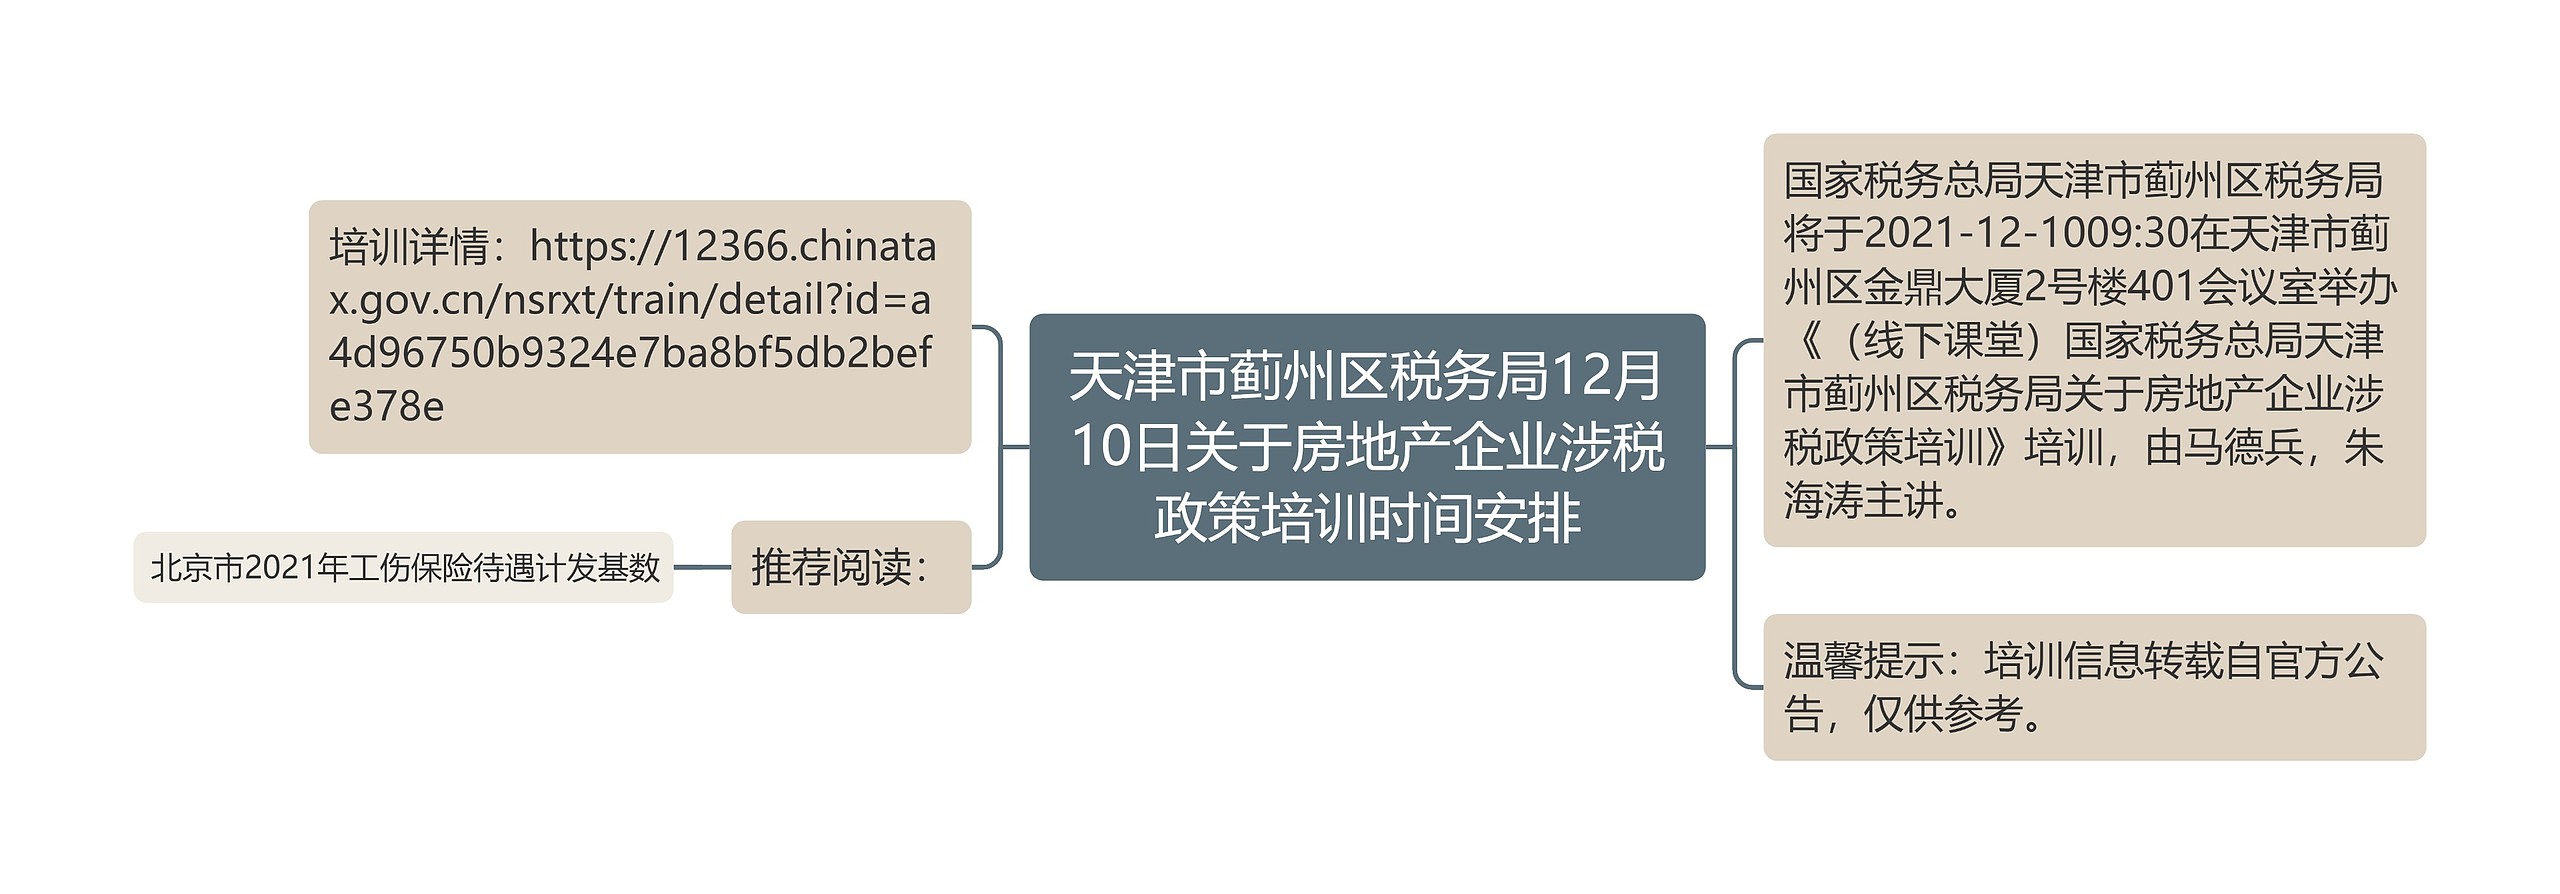 天津市蓟州区税务局12月10日关于房地产企业涉税政策培训时间安排